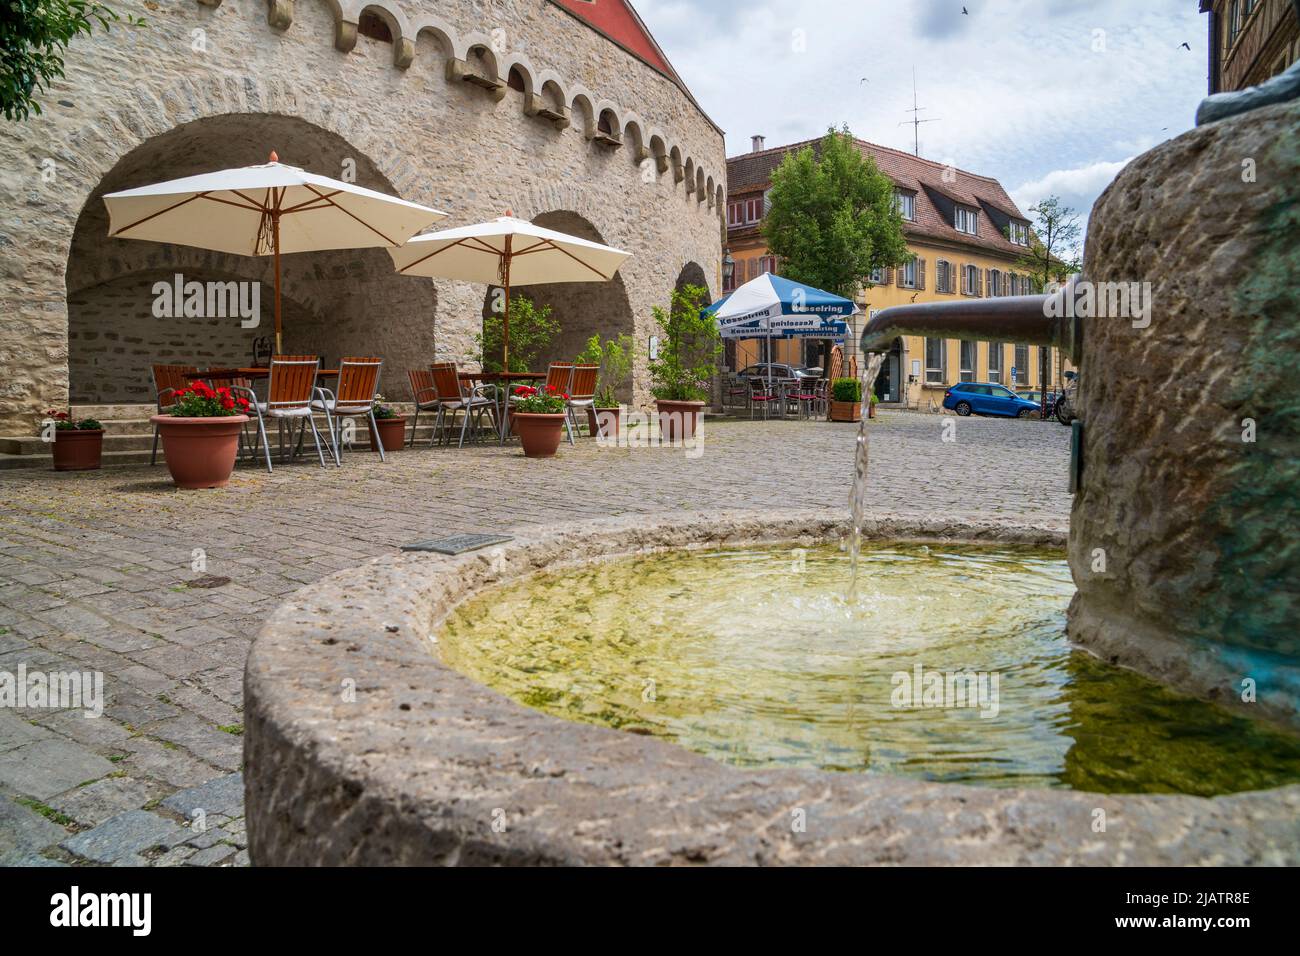 Die historische Altstadt von Dettelbach am Main in Unterfranken mit malerischen Gebäuden innerhalb der Stadtmauer Foto de stock